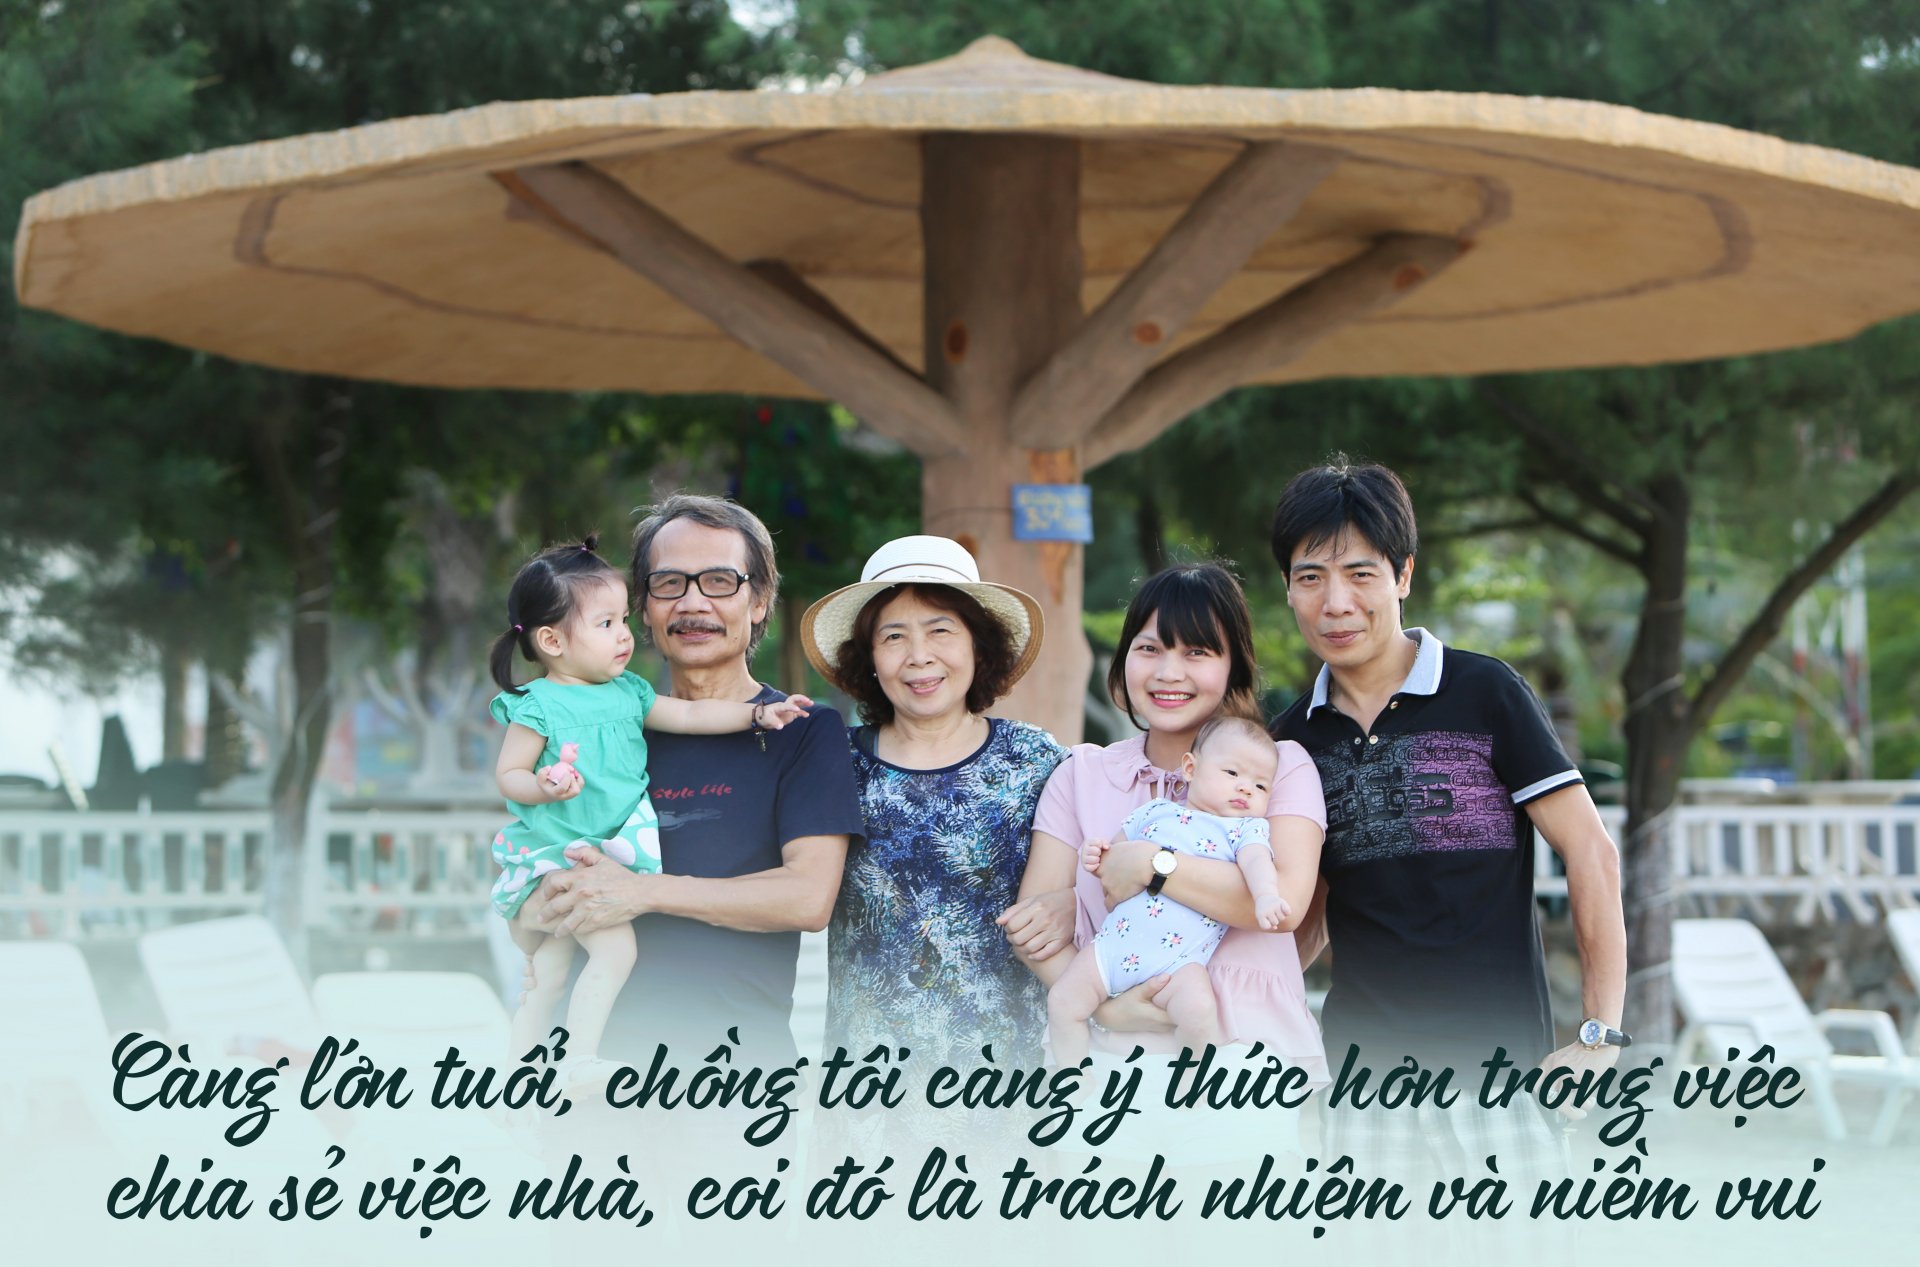 Giáo sư Lê Thị Quý: 'Khi nào ngày 8/3 chỉ còn là kỷ niệm thì phụ nữ sẽ hạnh phúc' 1